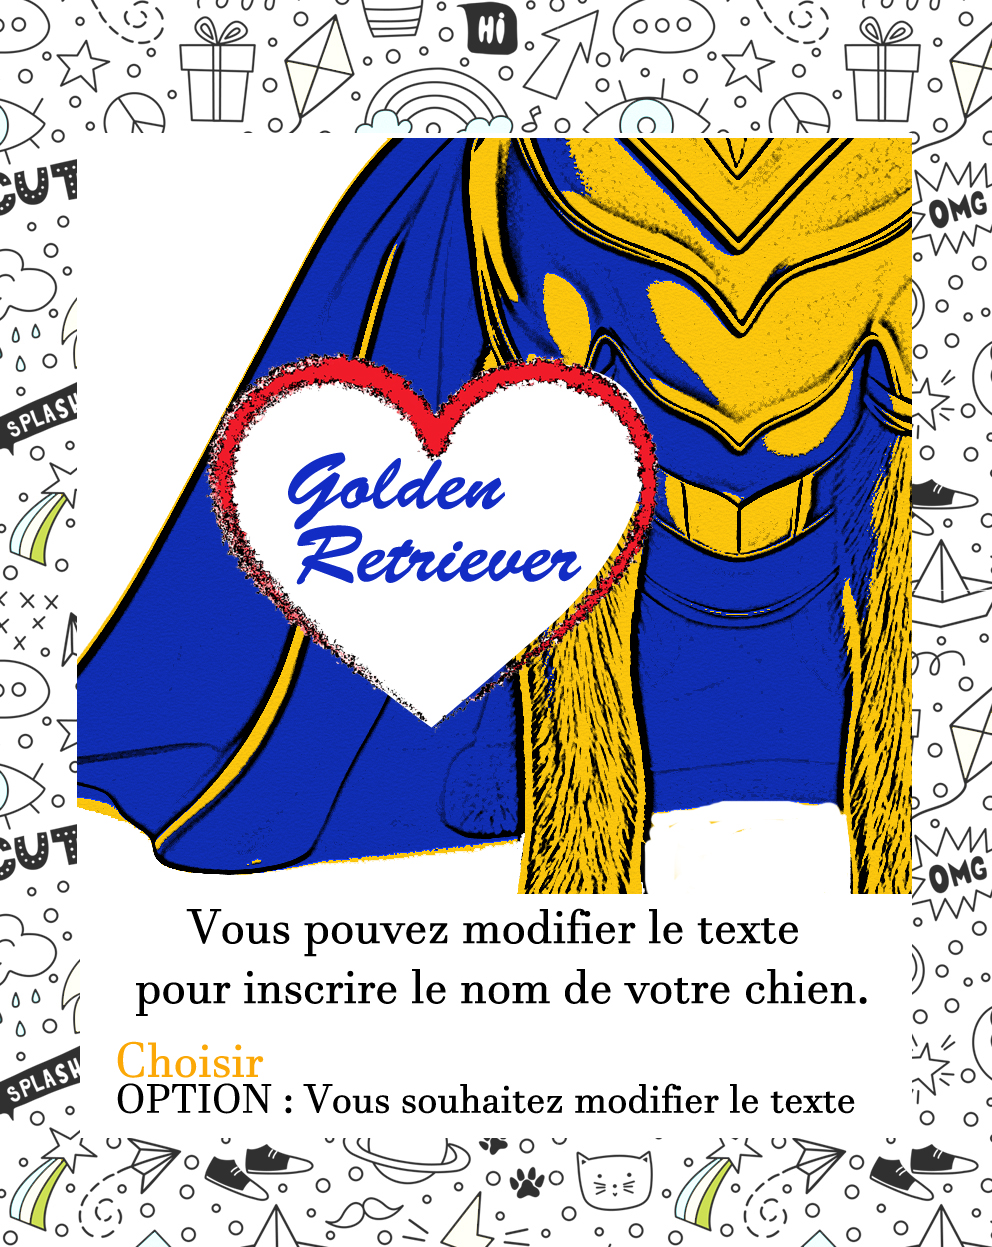 golden retriever texte modifiable